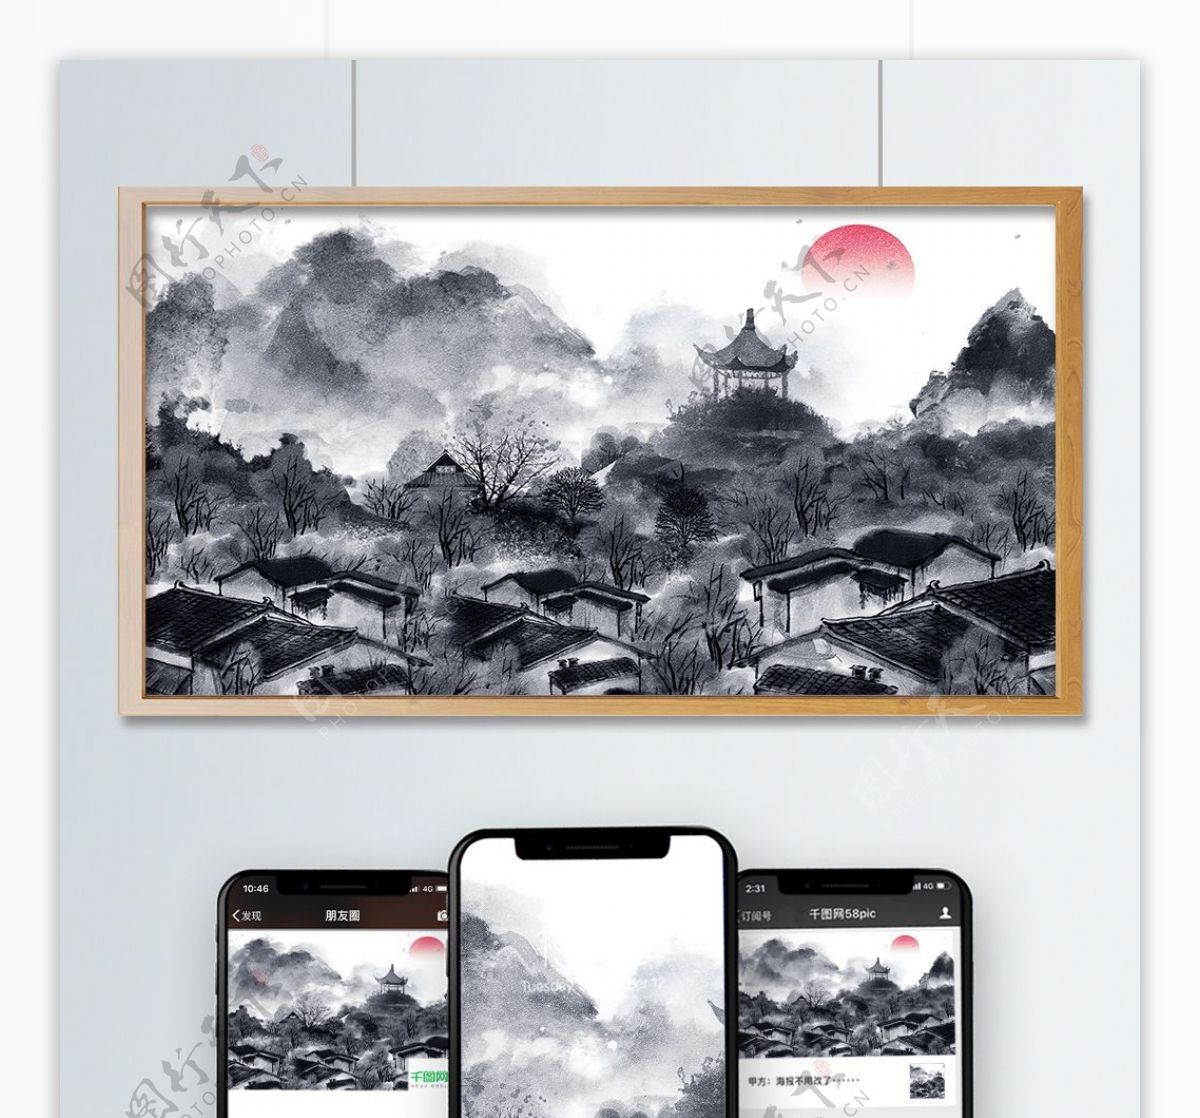 中国复古水墨画风景画中国水墨插画